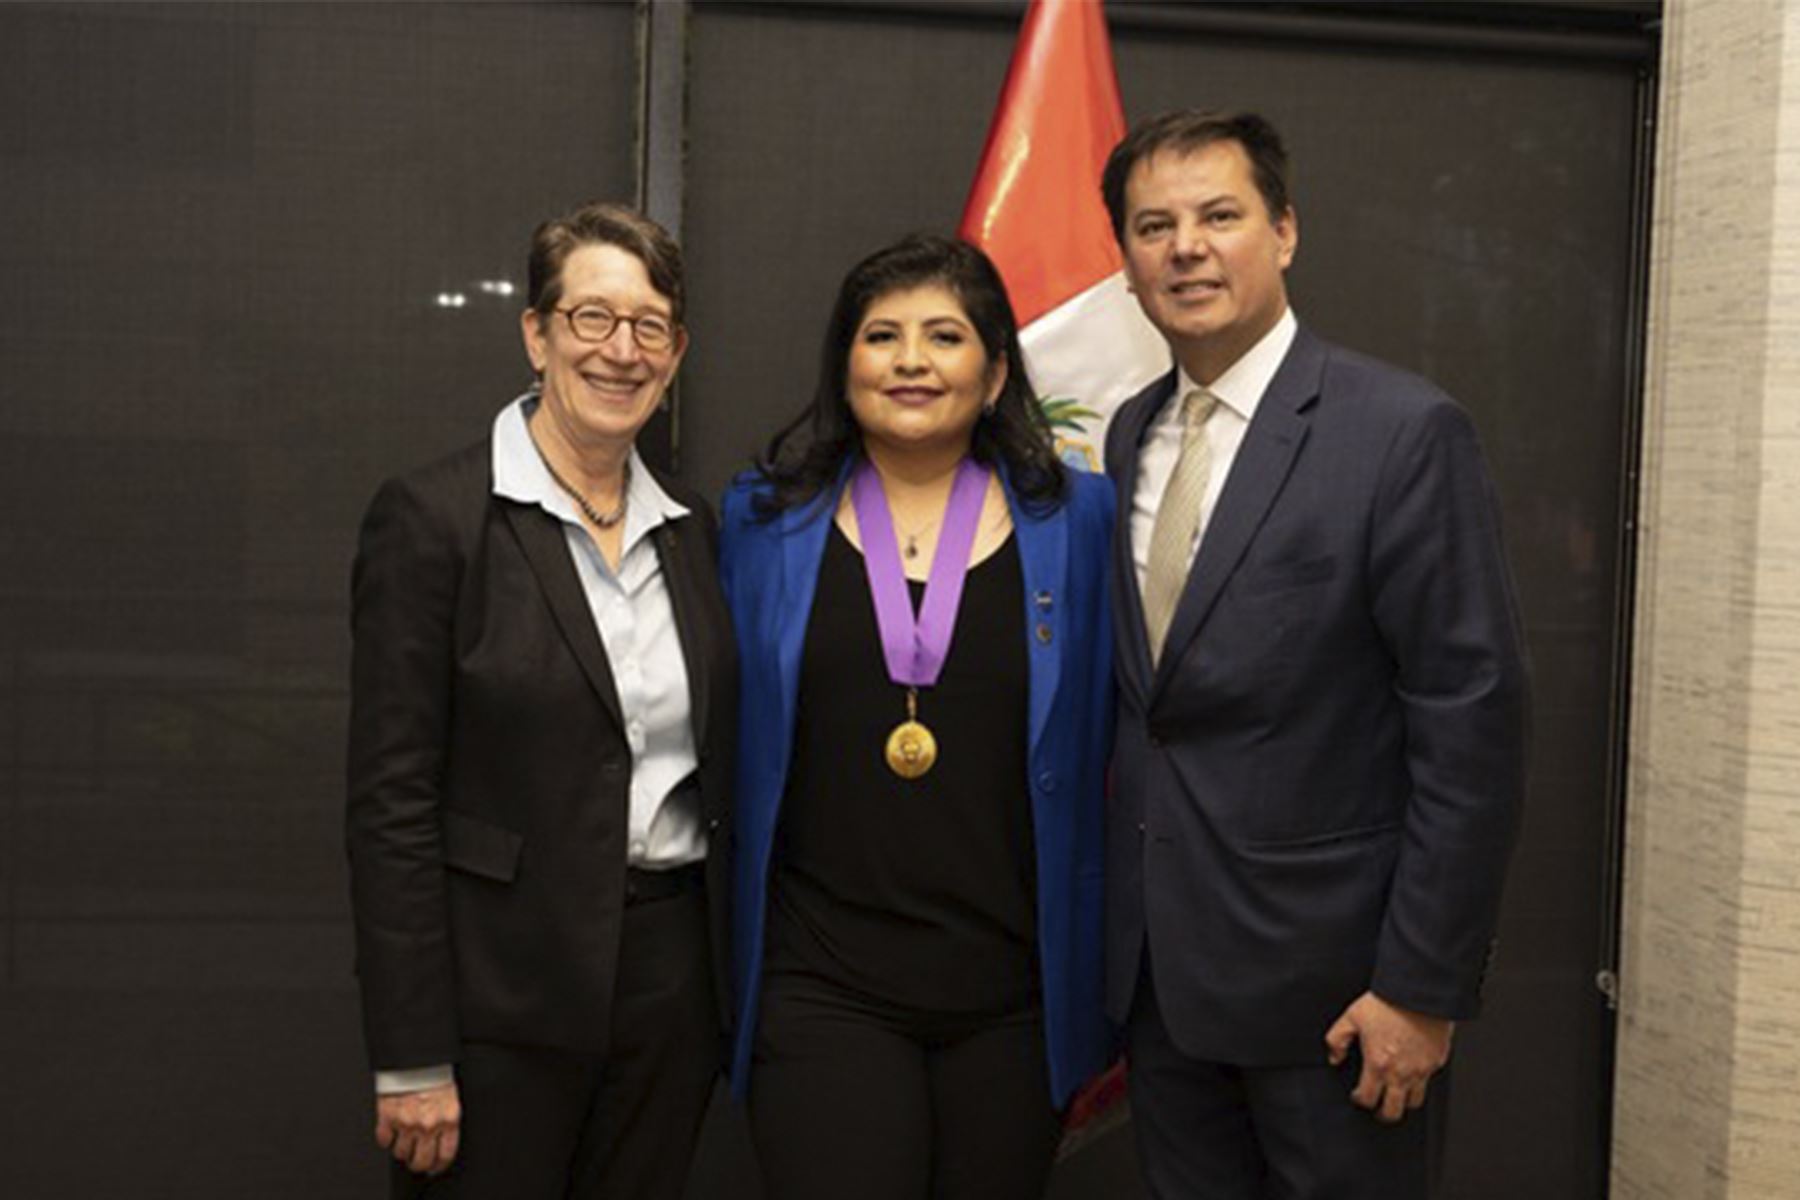 Aracely Quispe, la peruana que se desempeña como ingeniera astronáutica de la NASA y que en el 2021 participó de la misión de lanzamiento del telescopio espacial James Webb, ha sido galardonada con el grado de Comendador en la Orden al Mérito por Servicios Distinguidos por parte del Estado peruano.